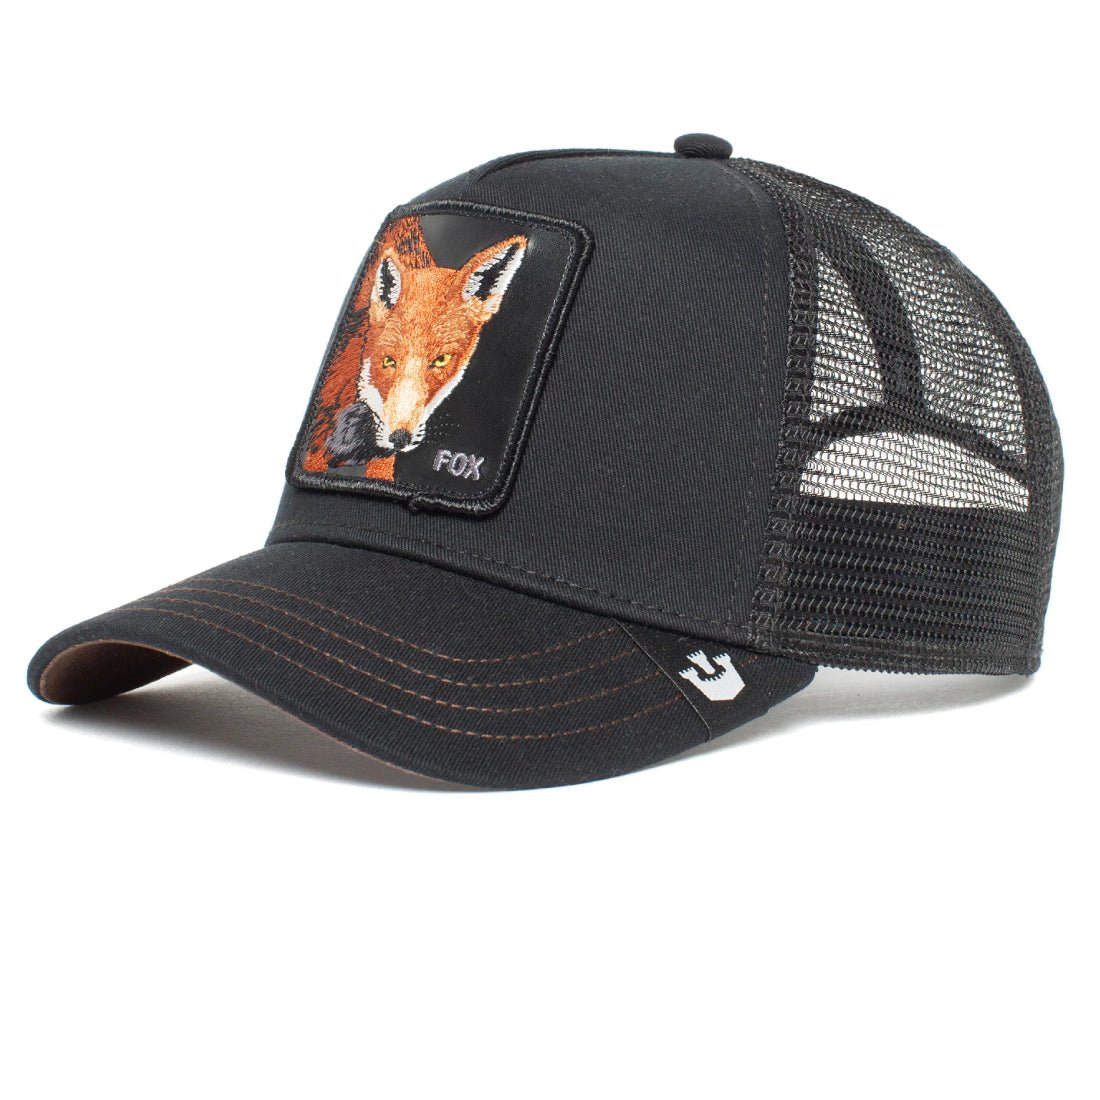 Queue Caps The Fox Cap - Black - قبعة - Store 974 | ستور ٩٧٤